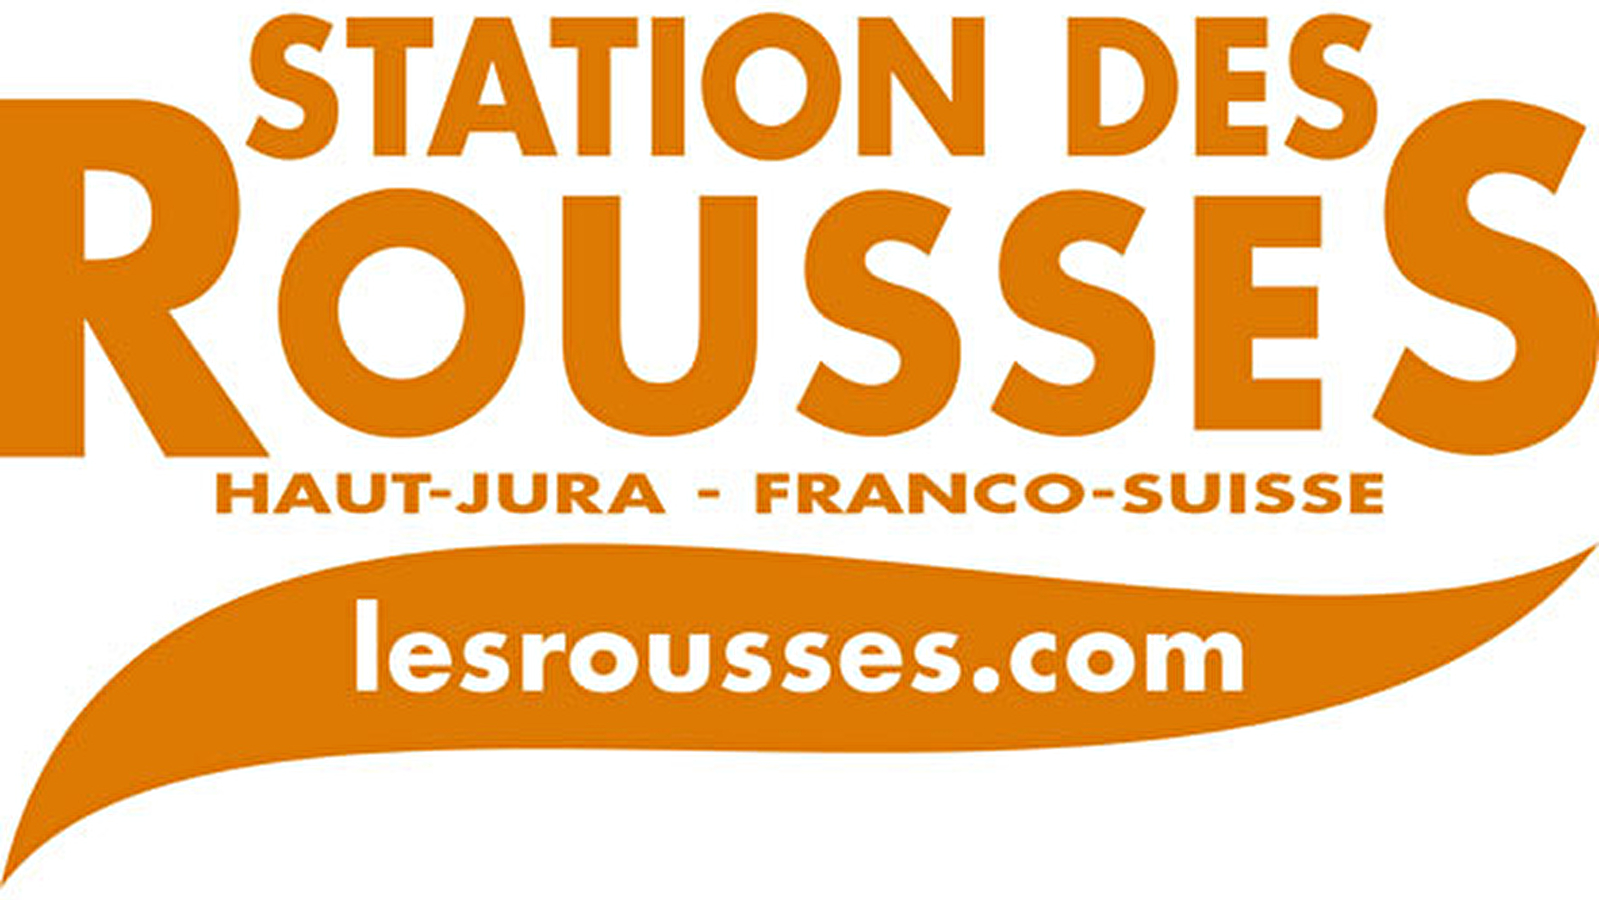 Bureau d'information touristique de Lamoura - Office de tourisme de la Station des Rousses